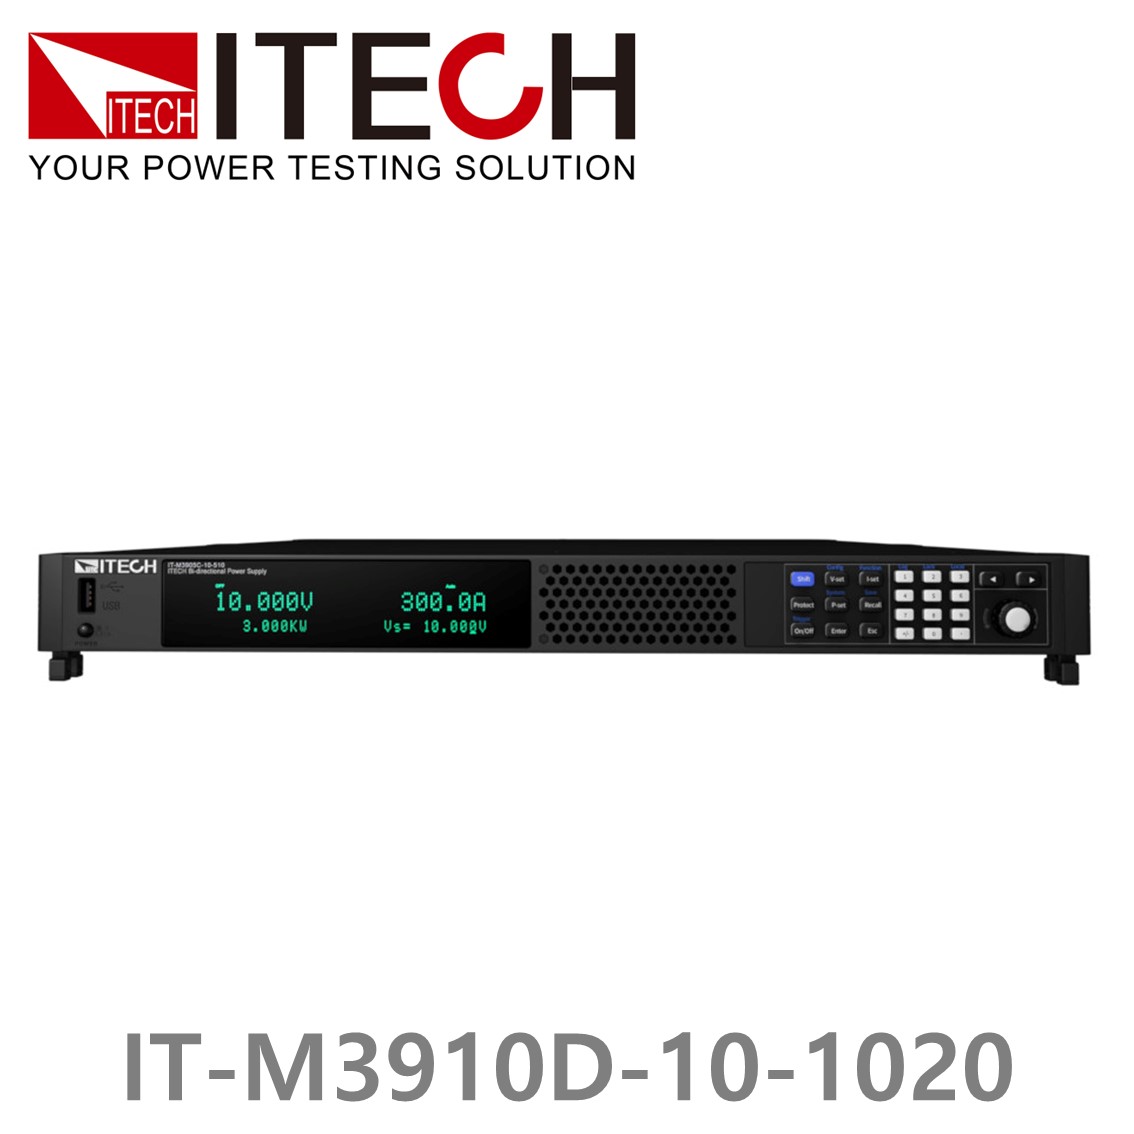 [ ITECH ] IT-M3910D-10-1020 양방향 프로그래머블 DC전원공급기, DC파워서플라이